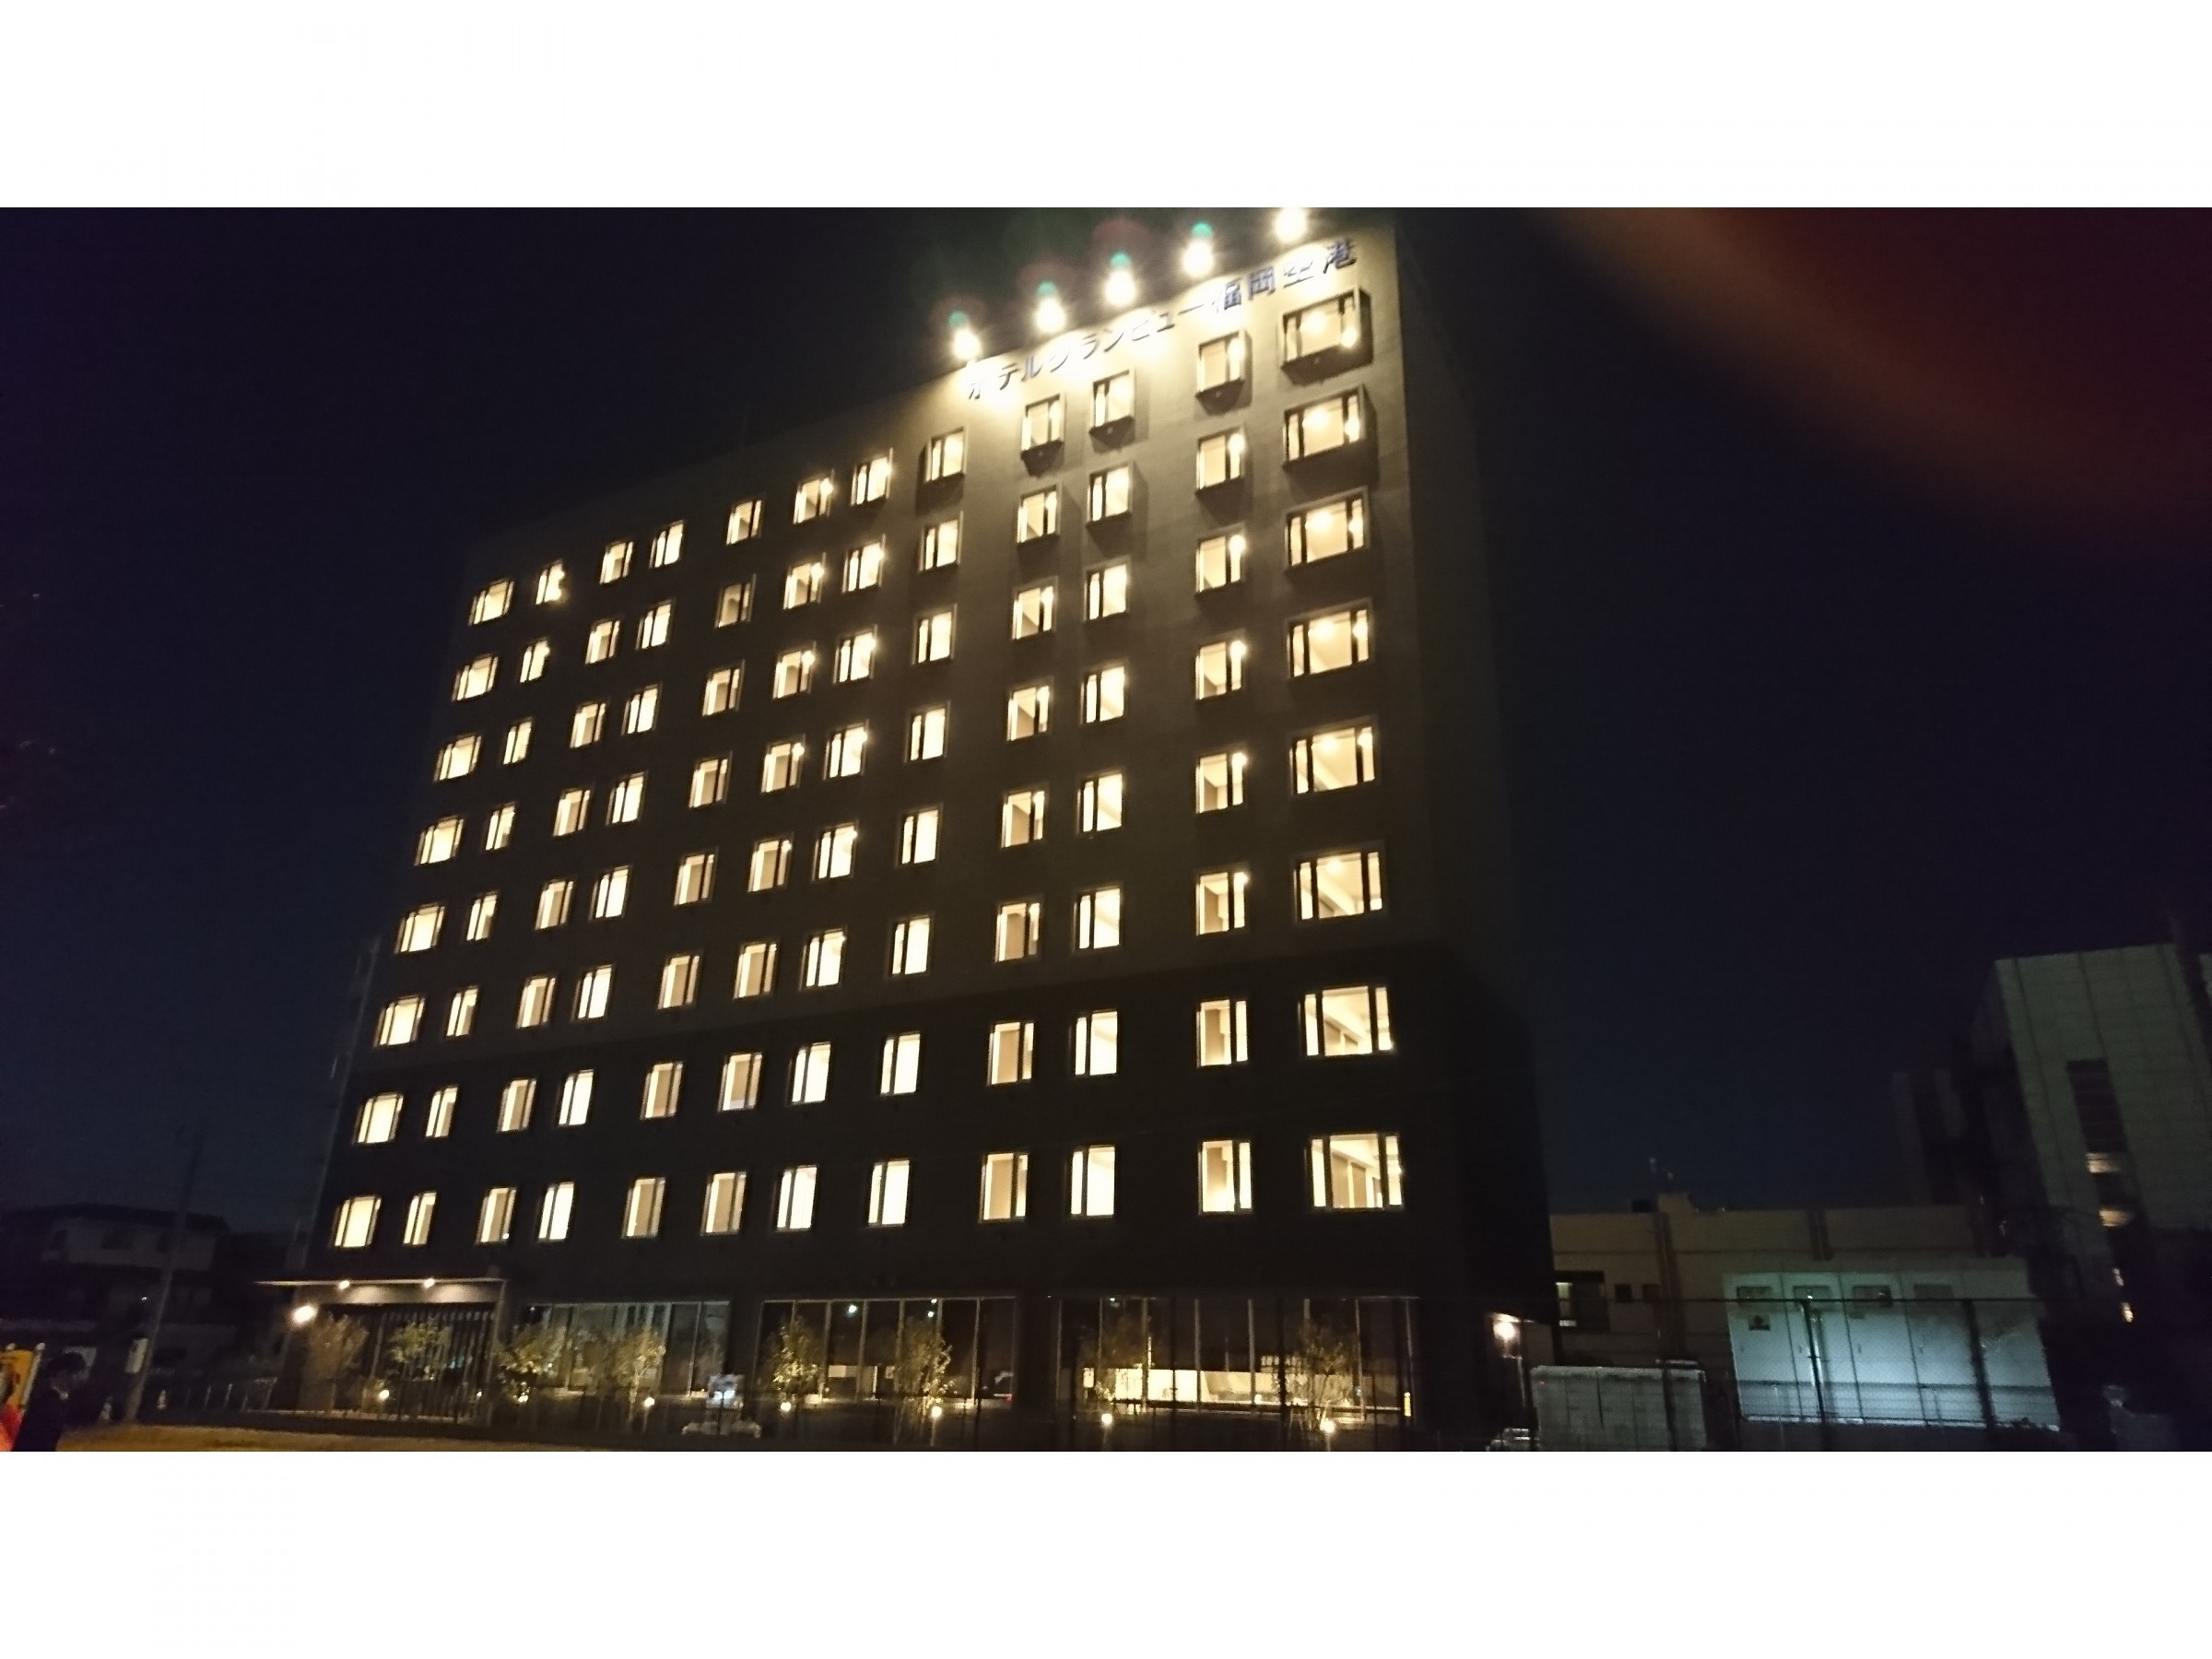 ホテルグランビュー福岡空港 夜景